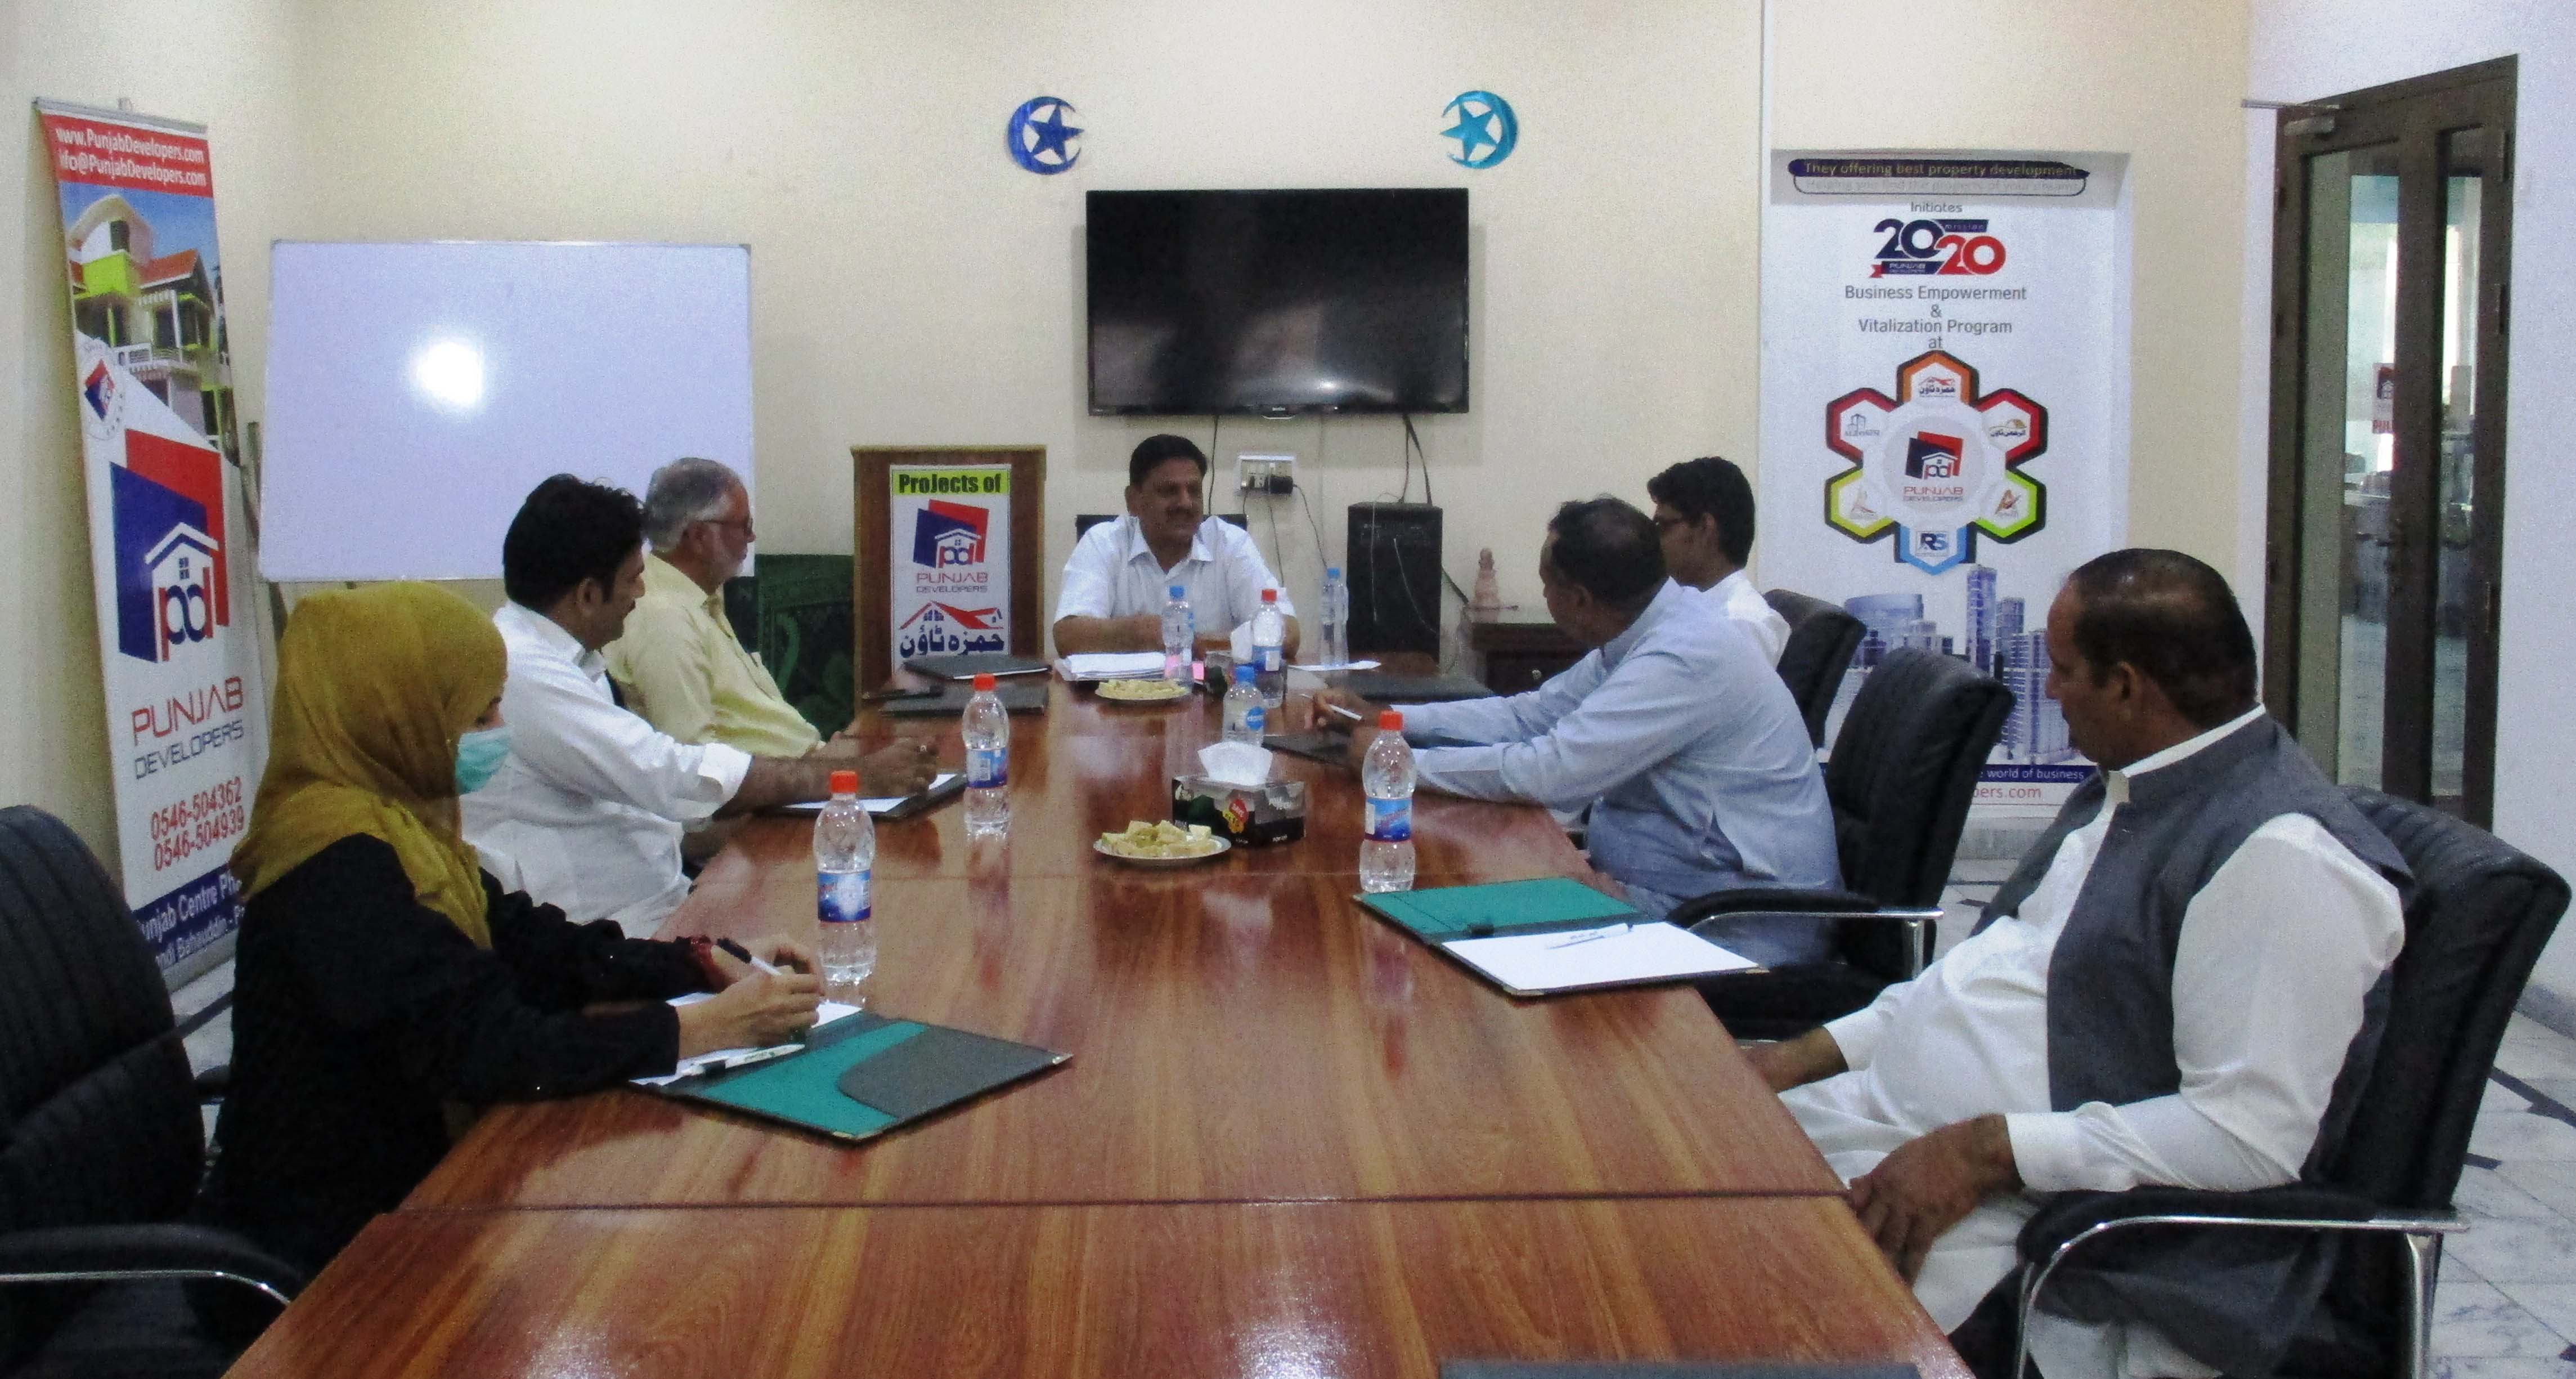 آفس پنجاب ڈویلپرز میں بورڈ آف ڈآئریکٹرز کی میٹنگ منعقد کی گئی